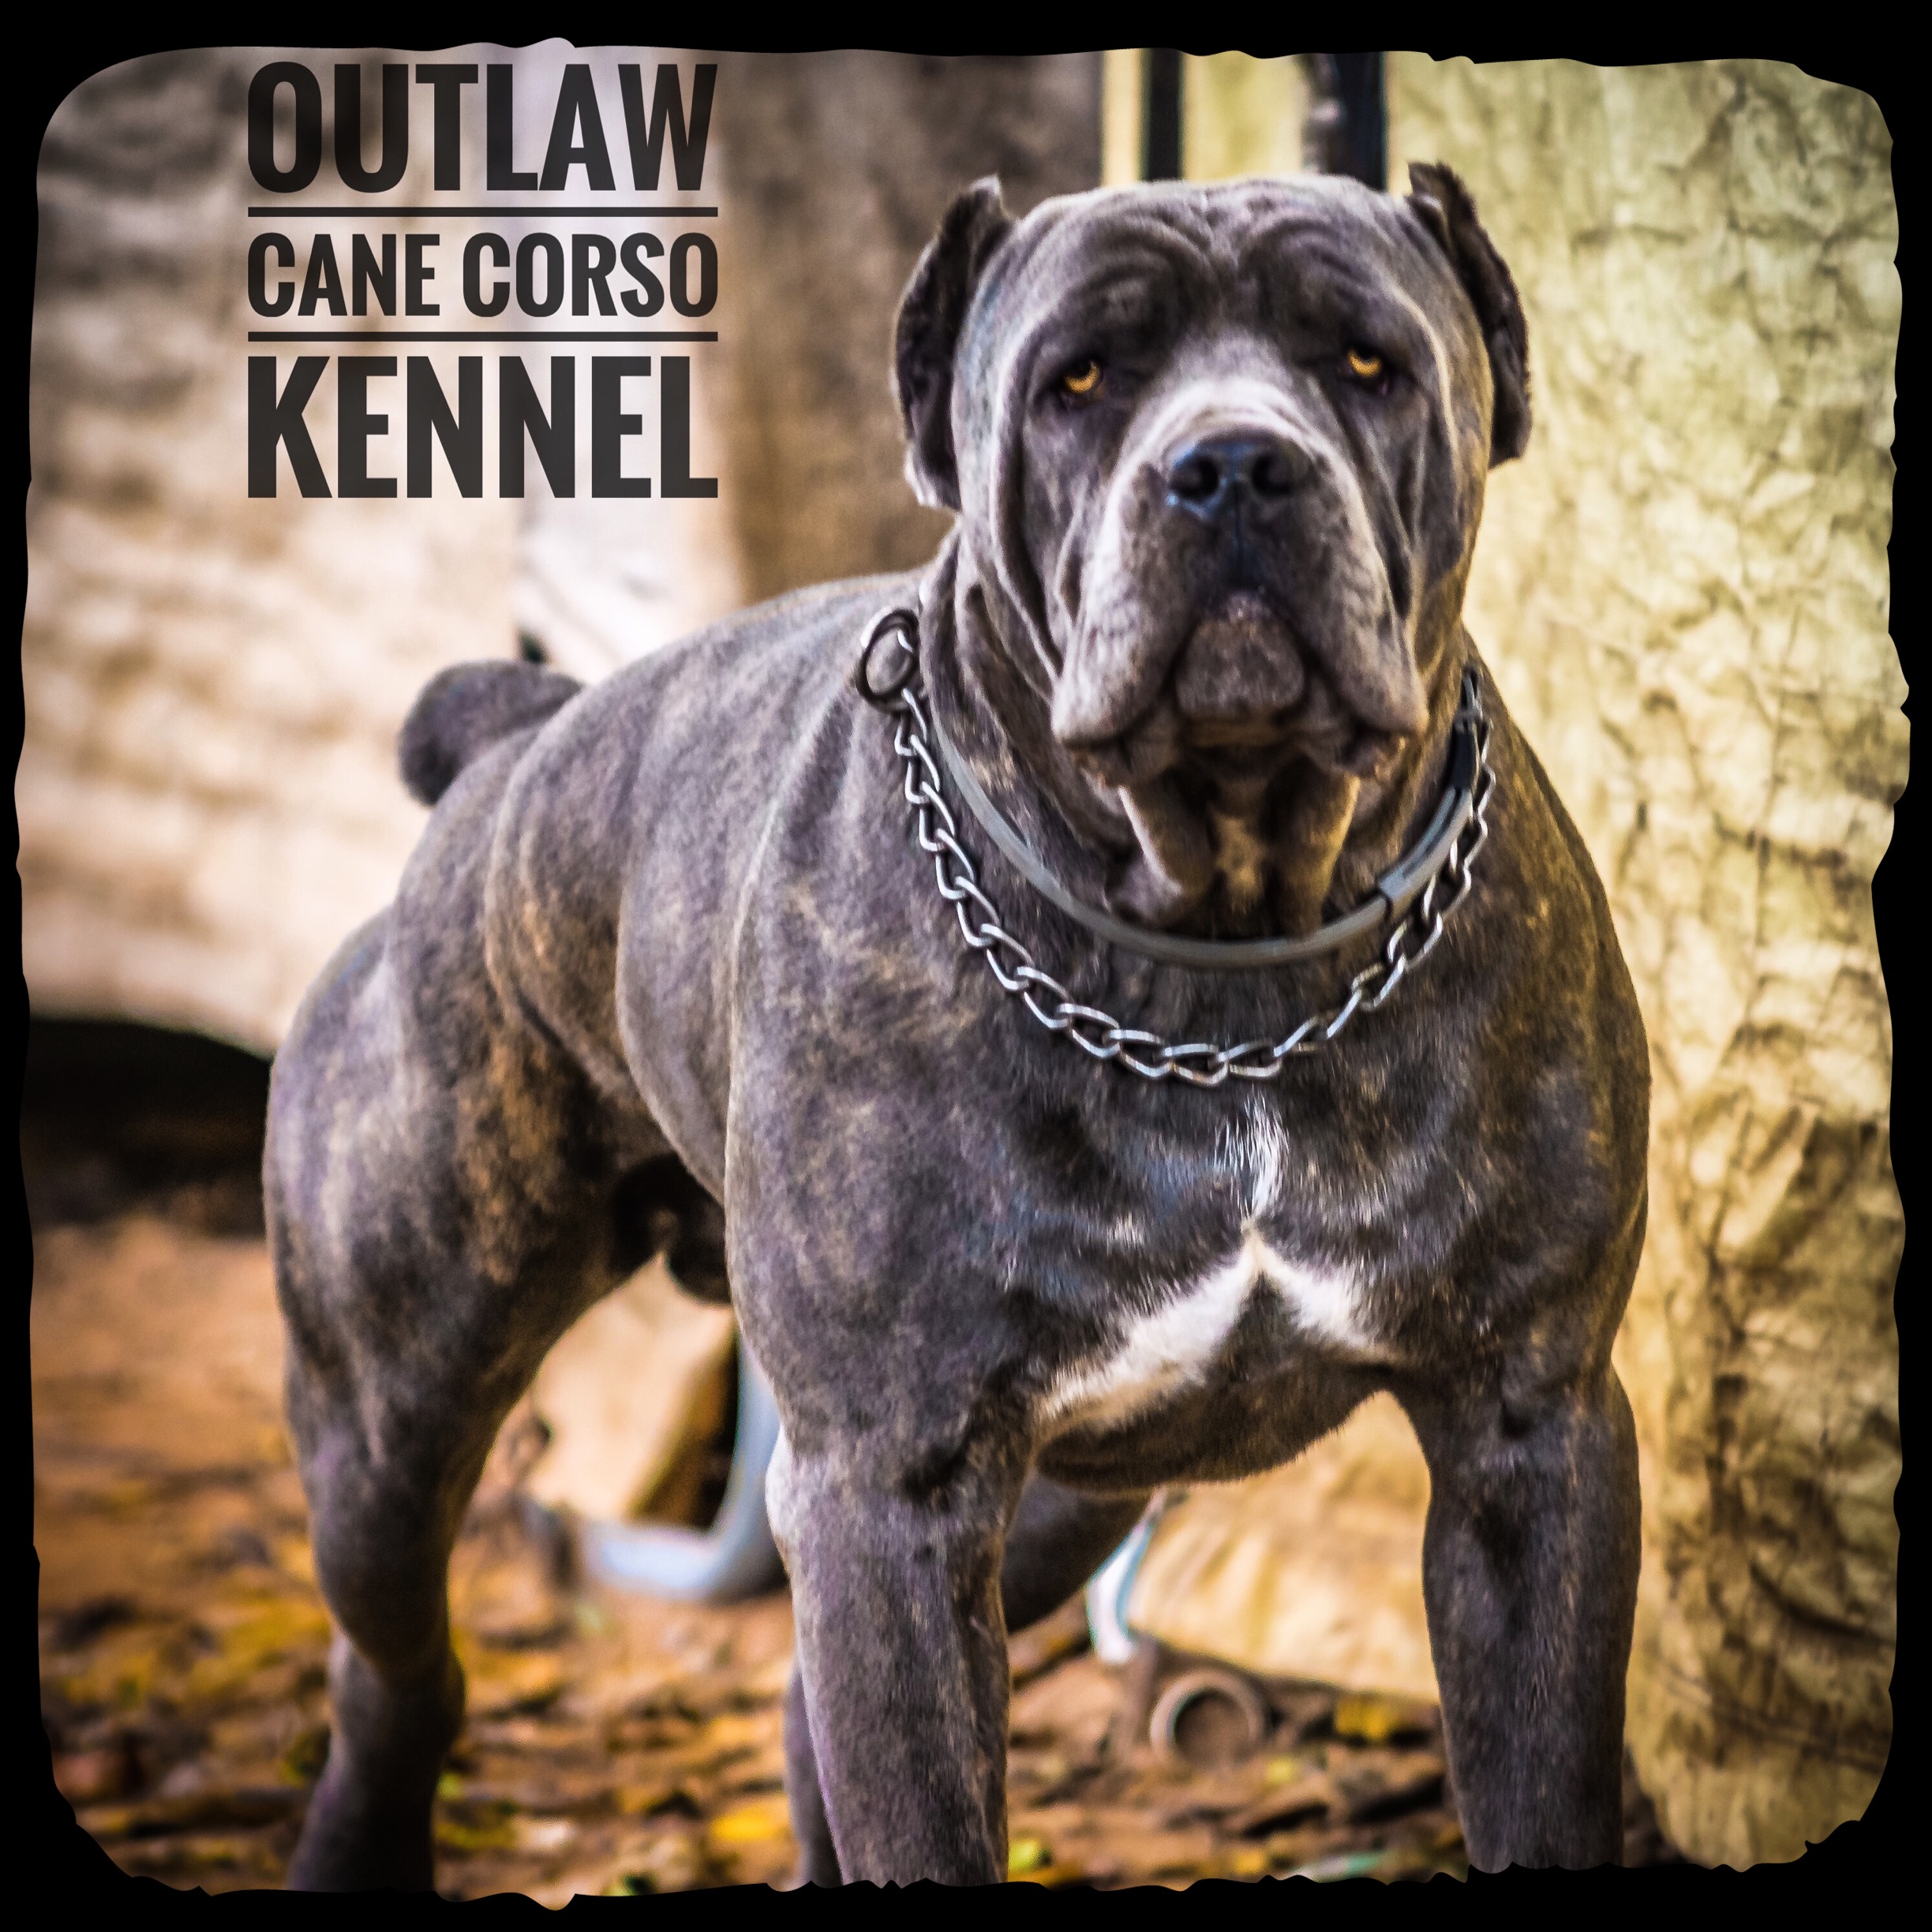 Outlaw Kennel Cane Corso, Louisiana